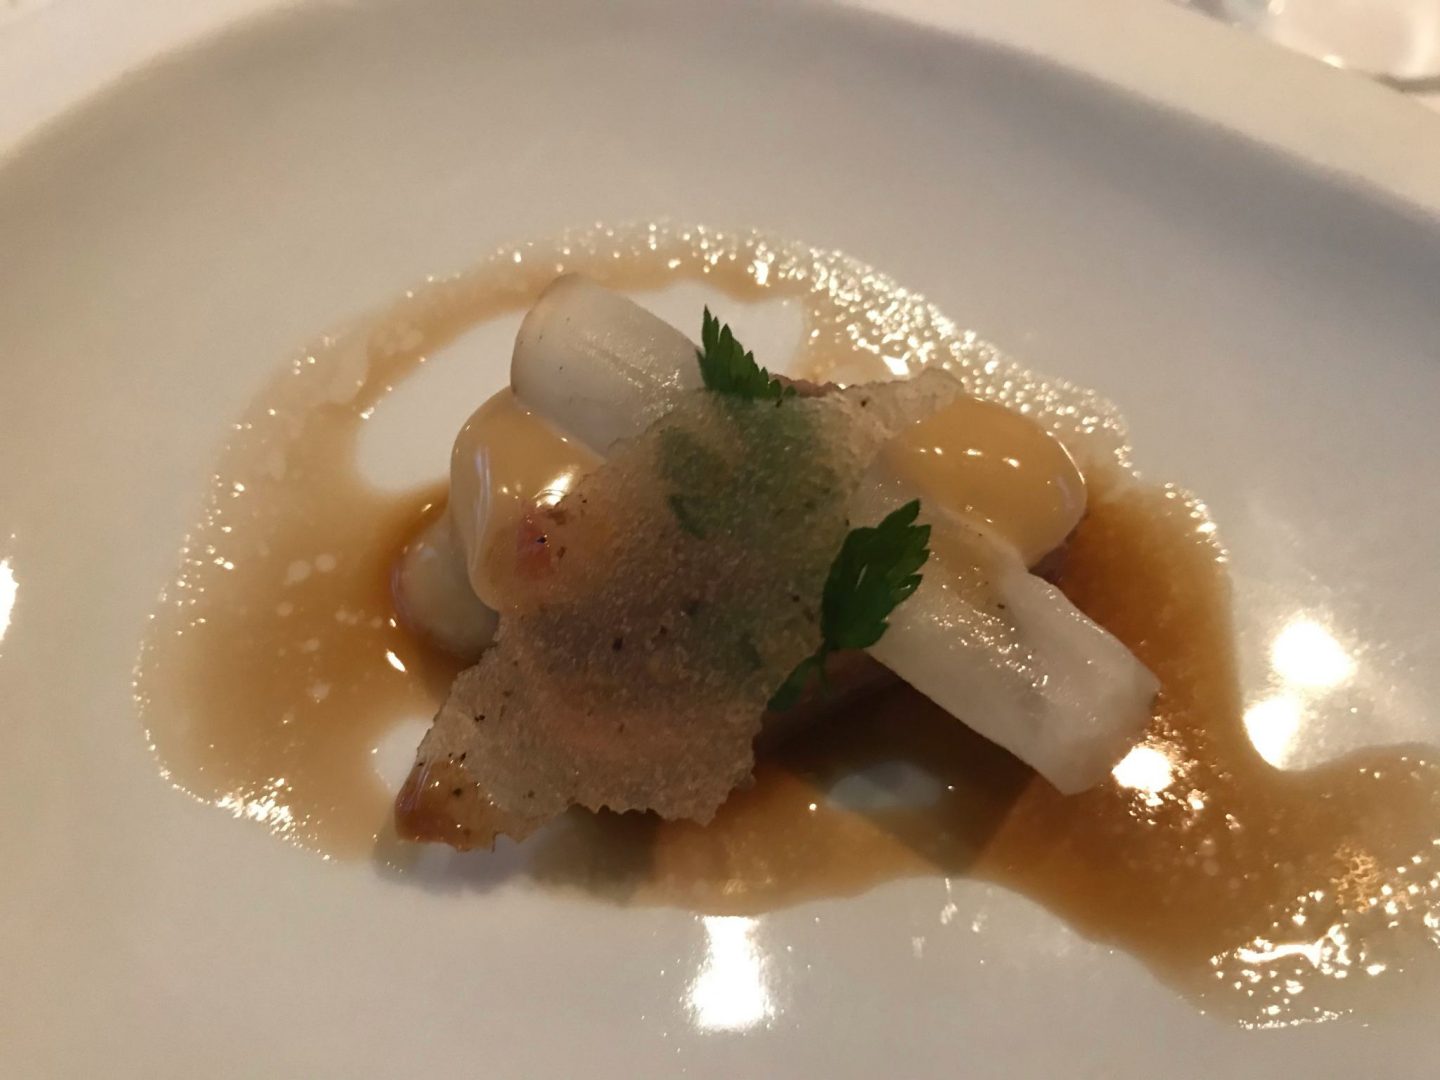 Gruß der Küche Tunfisch Thunfisch Sashimi Rettich Erfahrung Wilbrand Post Odenthal Foodblog Sternestulle